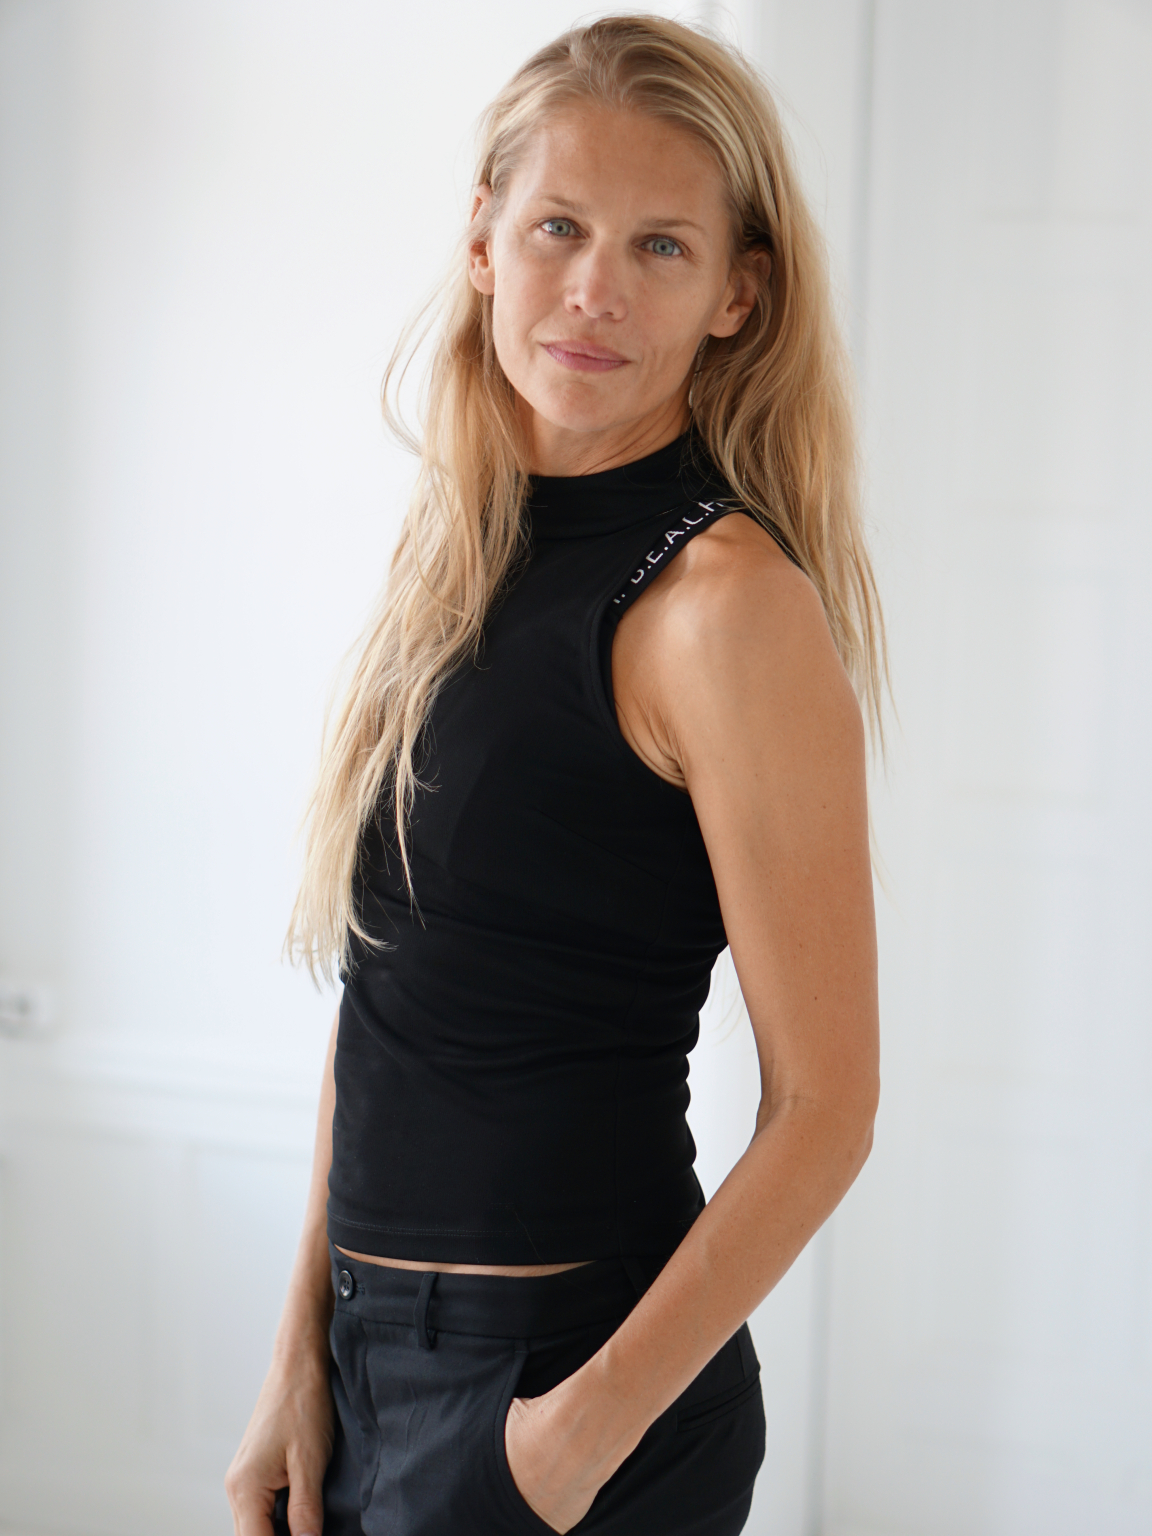 MIKAs | Karin Säby